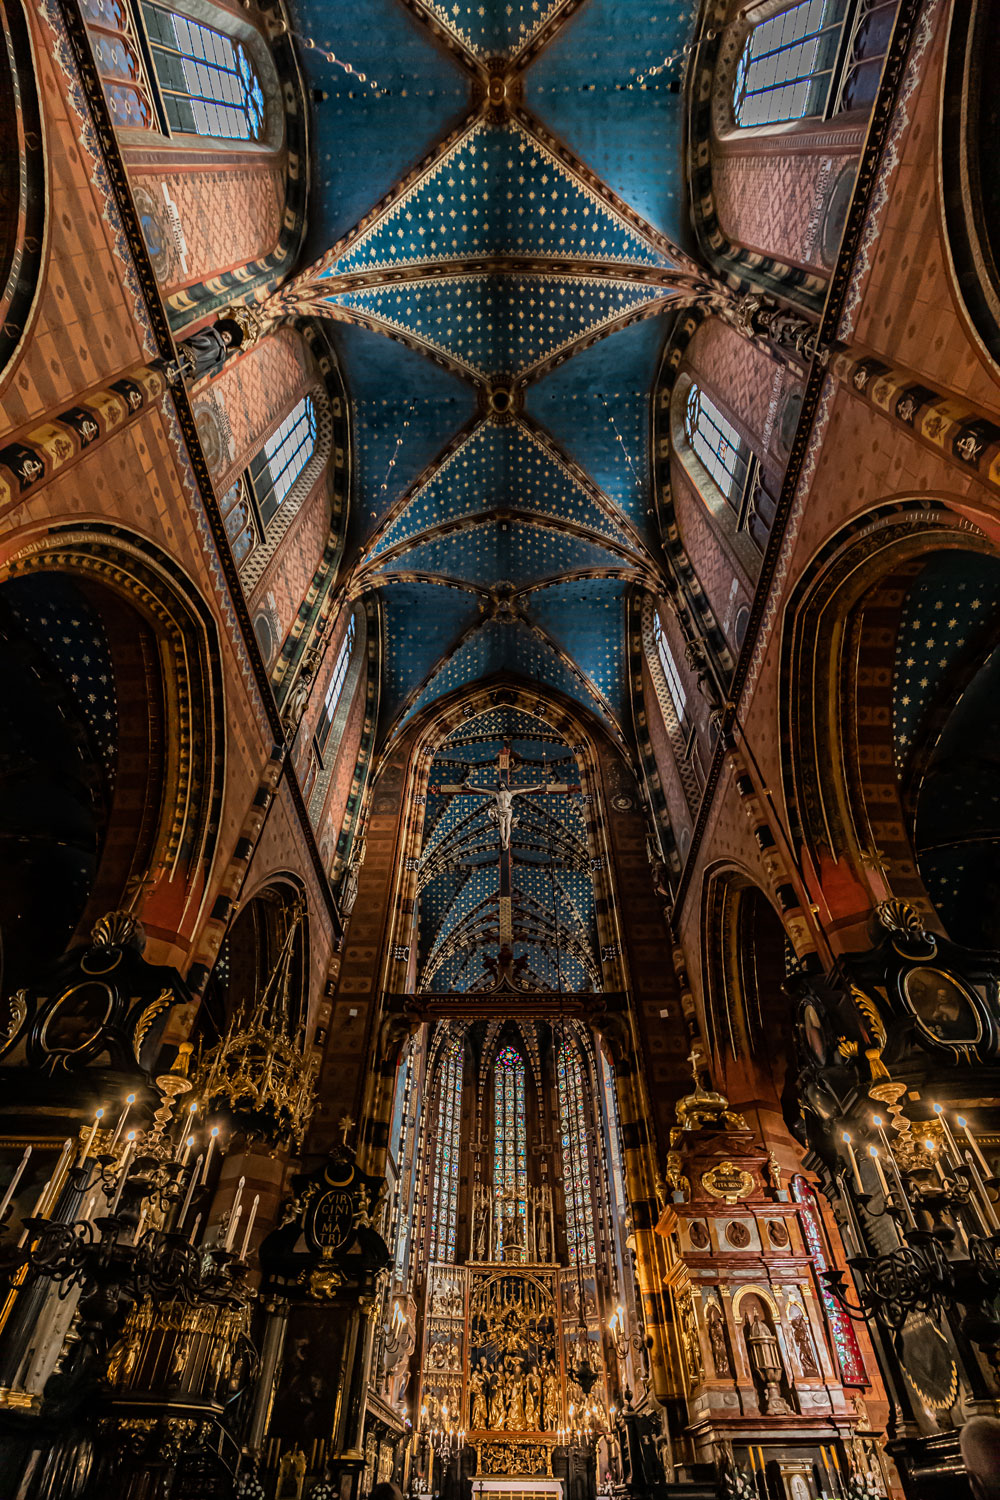 St. Mary’s Basilica things-to-do-in-krakow-poland-kelseyinlondon-kelsey-heinrichs-uk-travel-blogger-Kraków-travel-guide